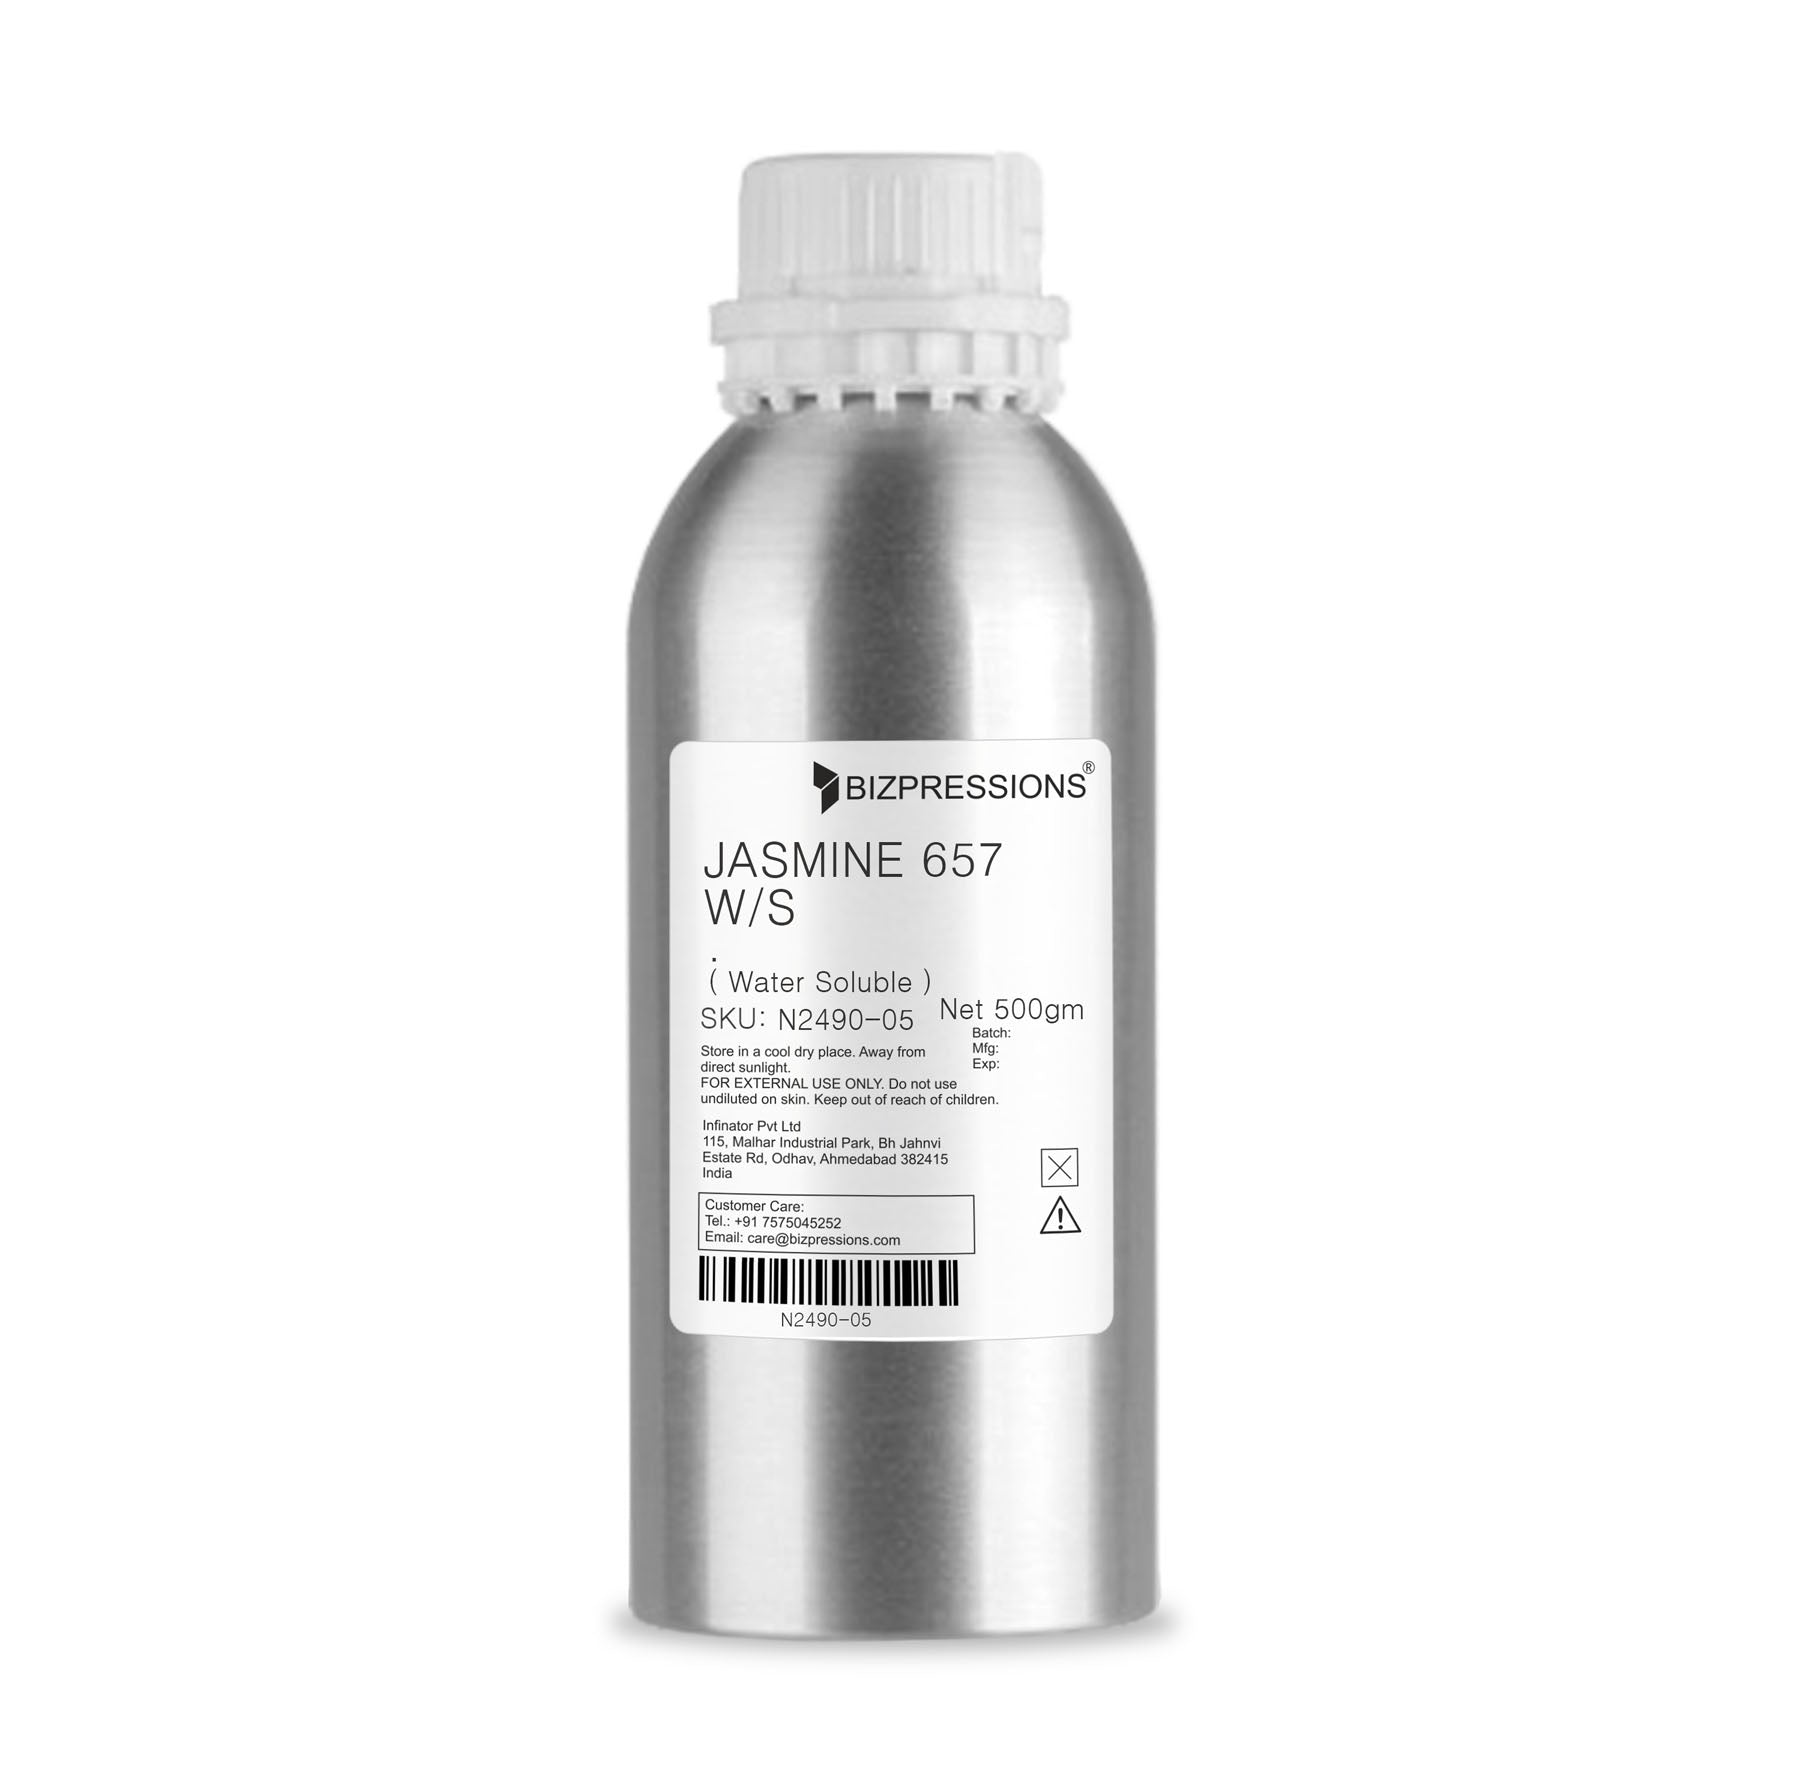 JASMINE 657 W/S - Fragrance ( Water Soluble ) - 500 gm